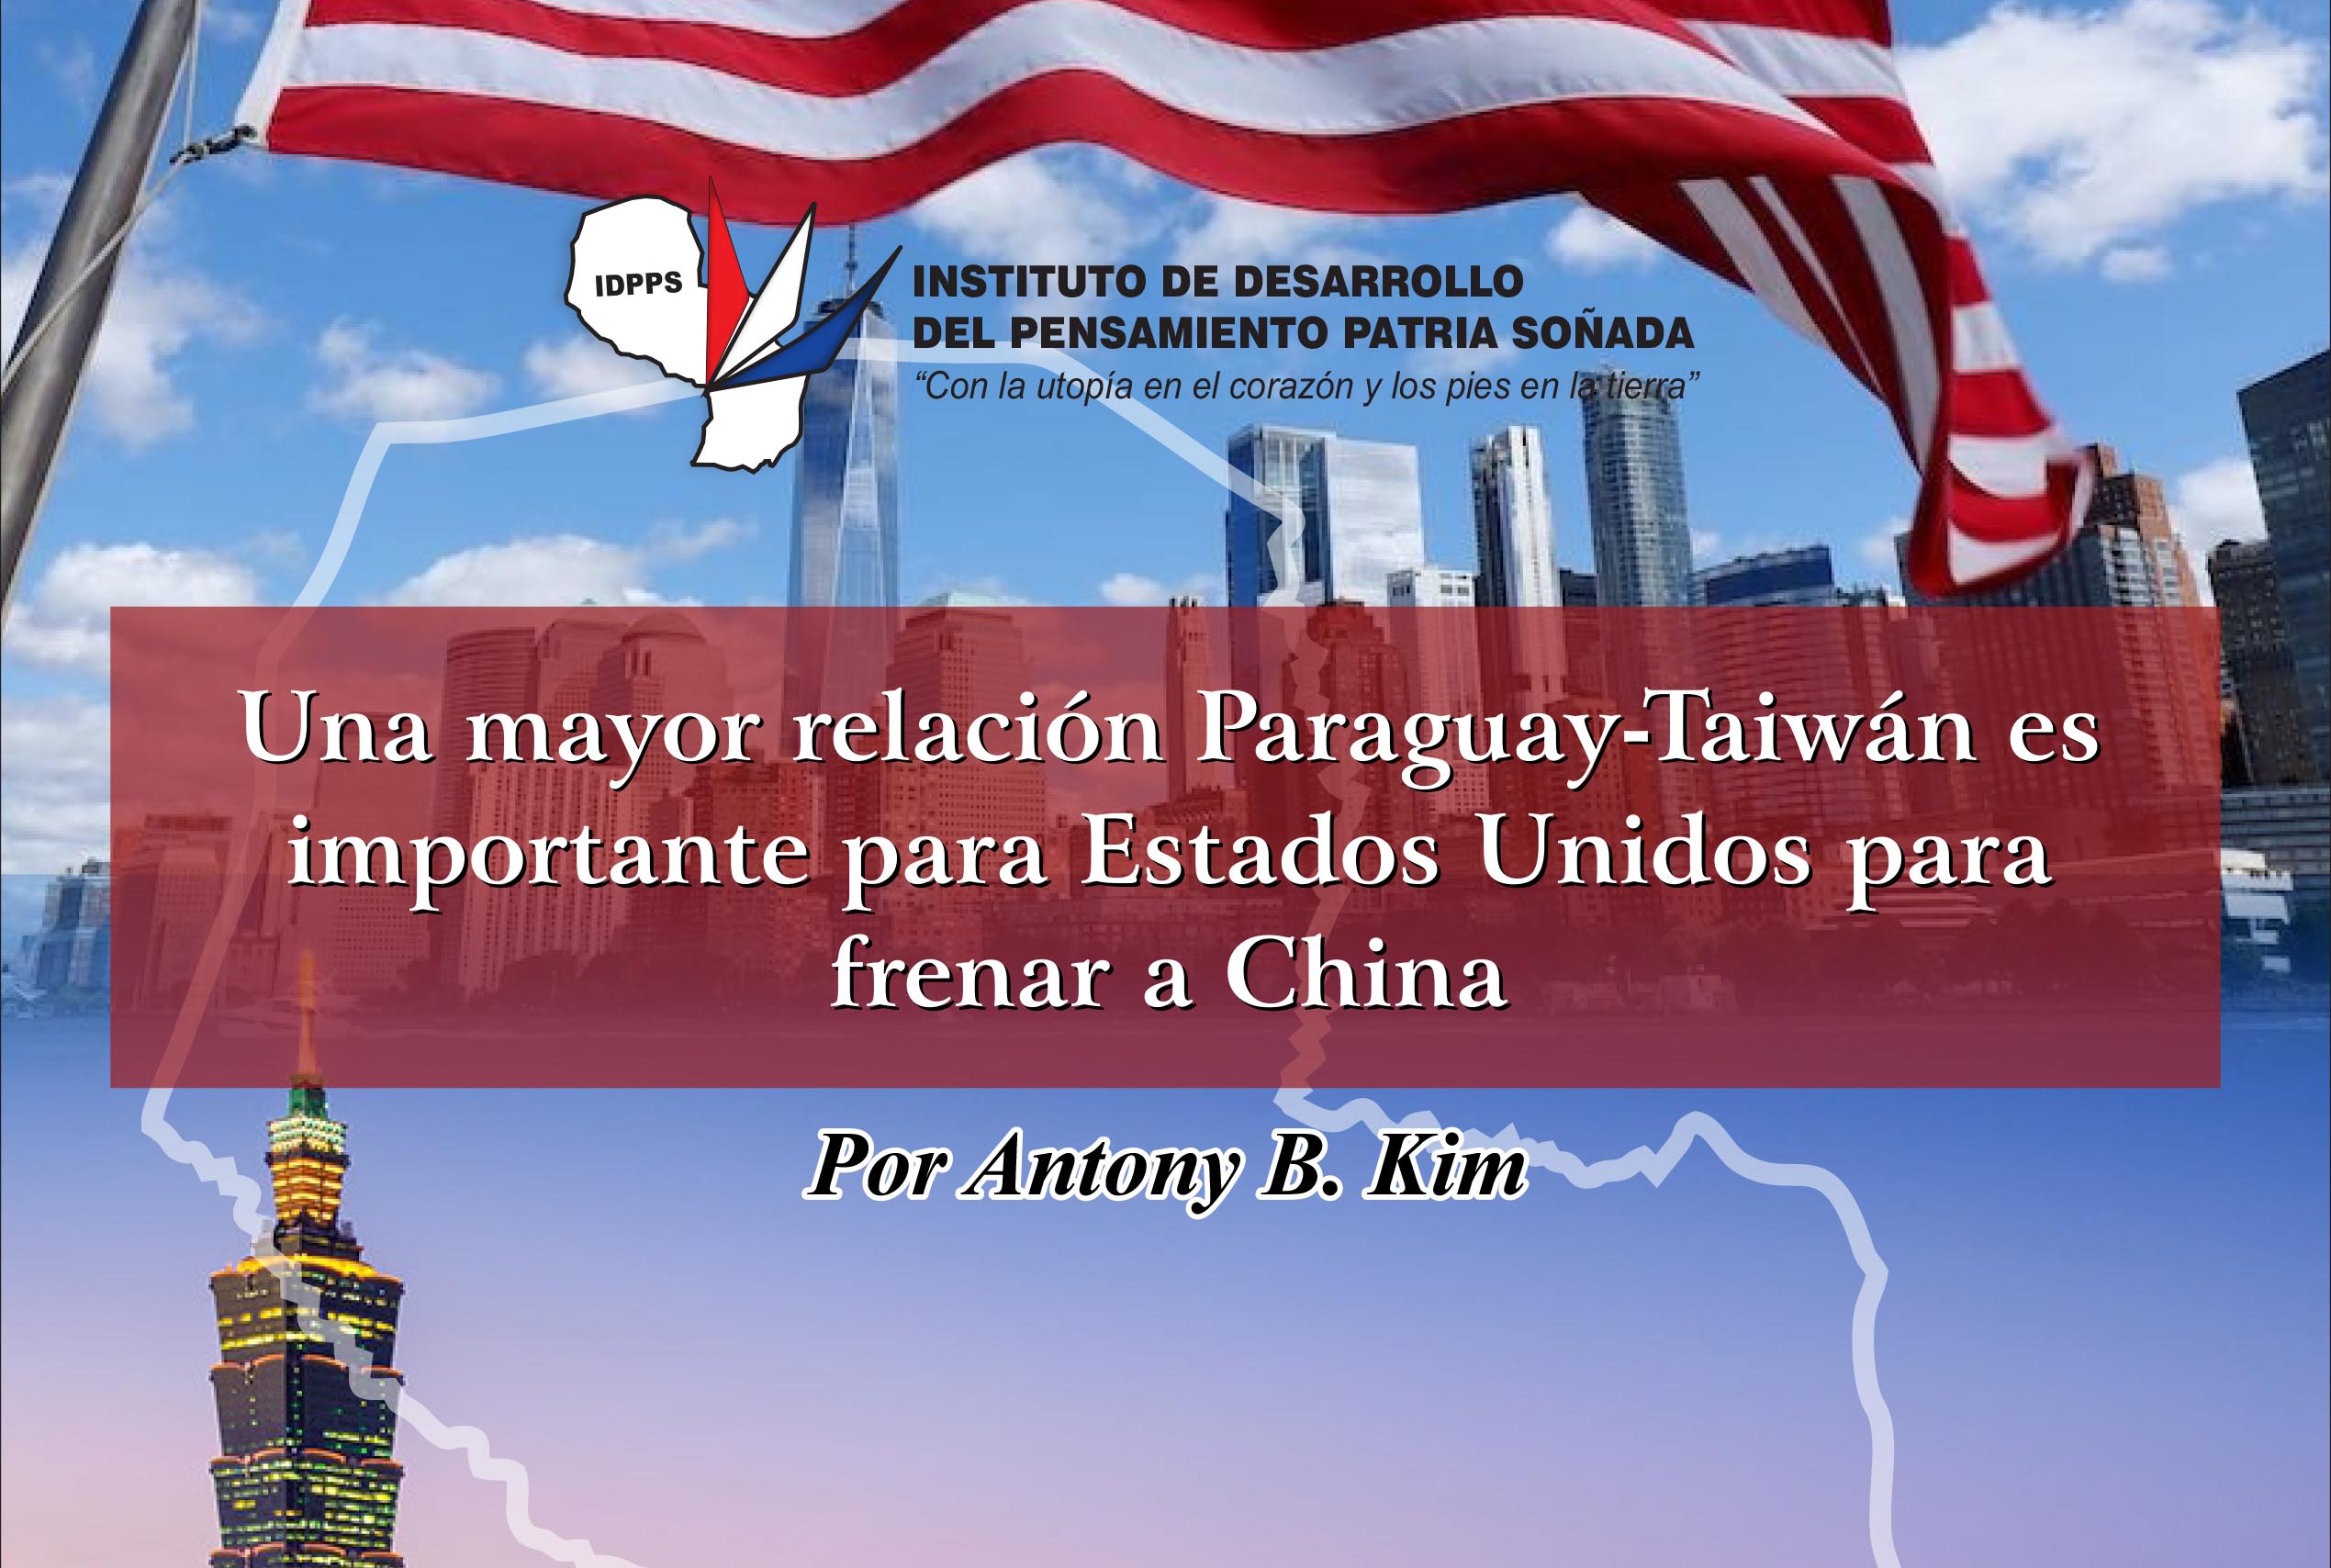 Relación Paraguay Taiwán, por Anthony Kim